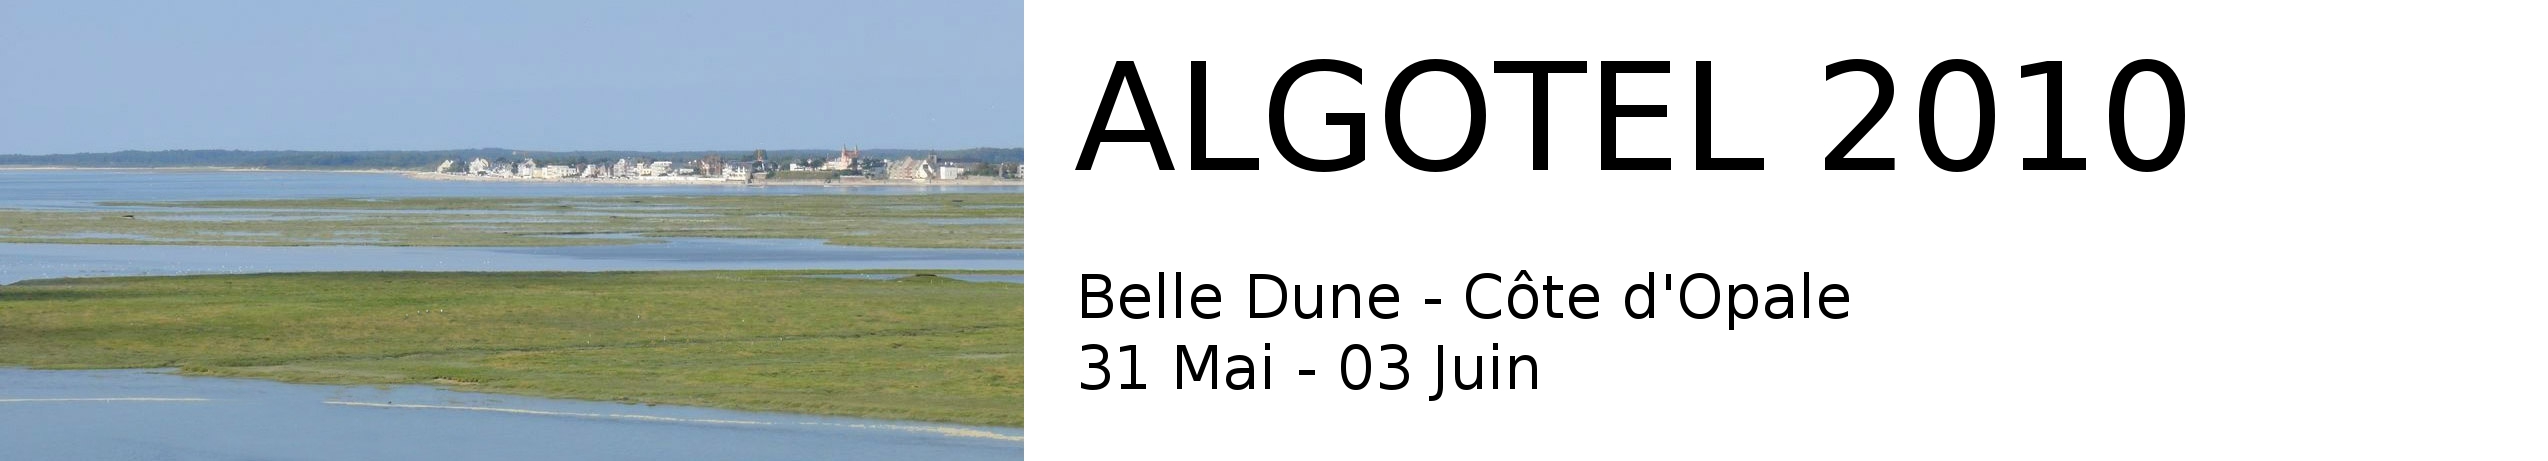 Site web de la conférence Algotel 2010